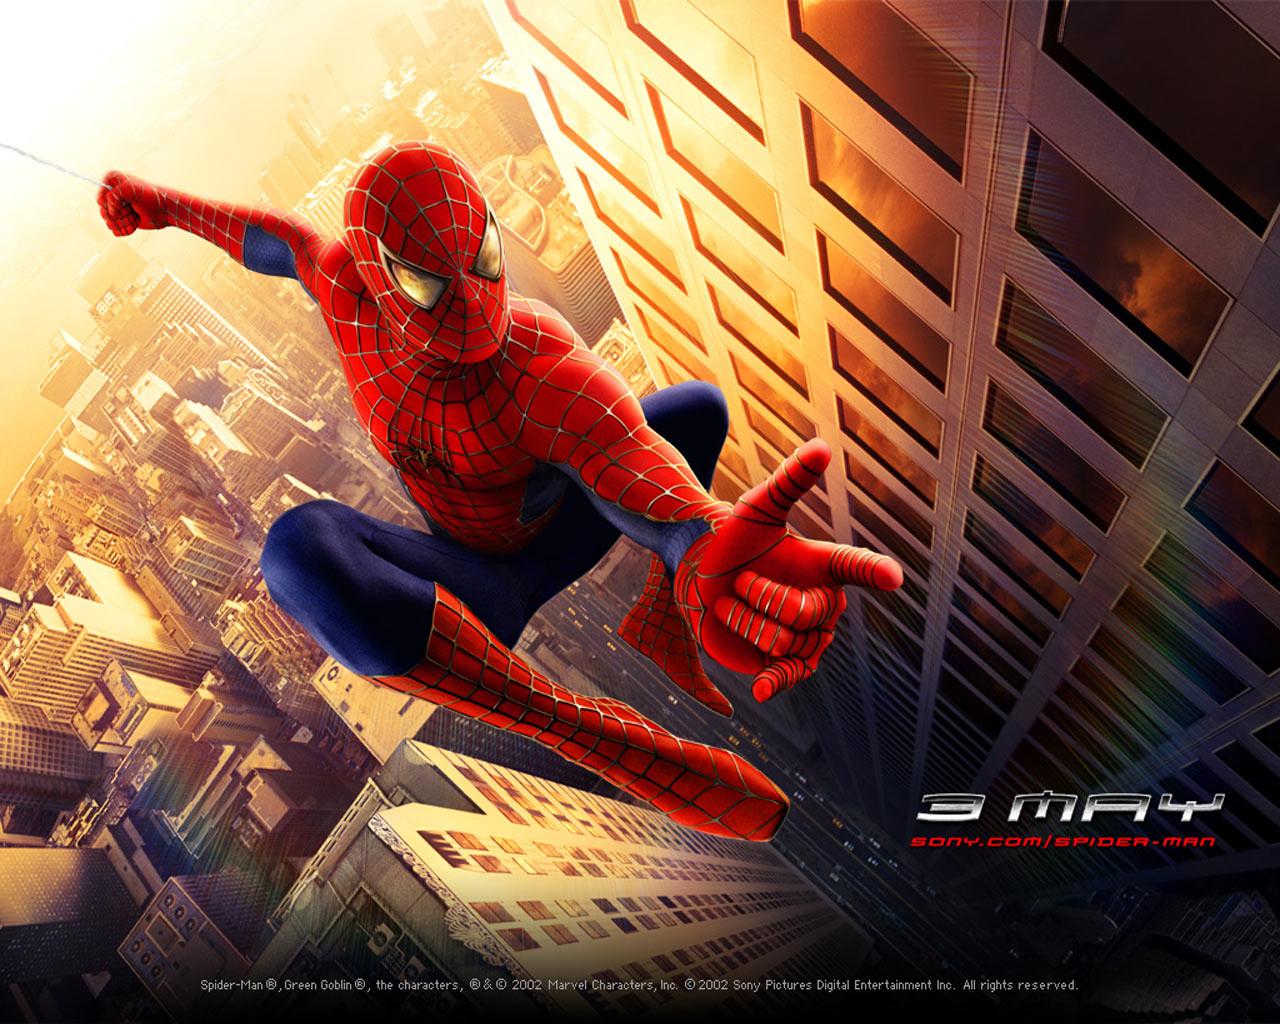 Spider-Man -  Wallpaper #1 1280 x 1024 